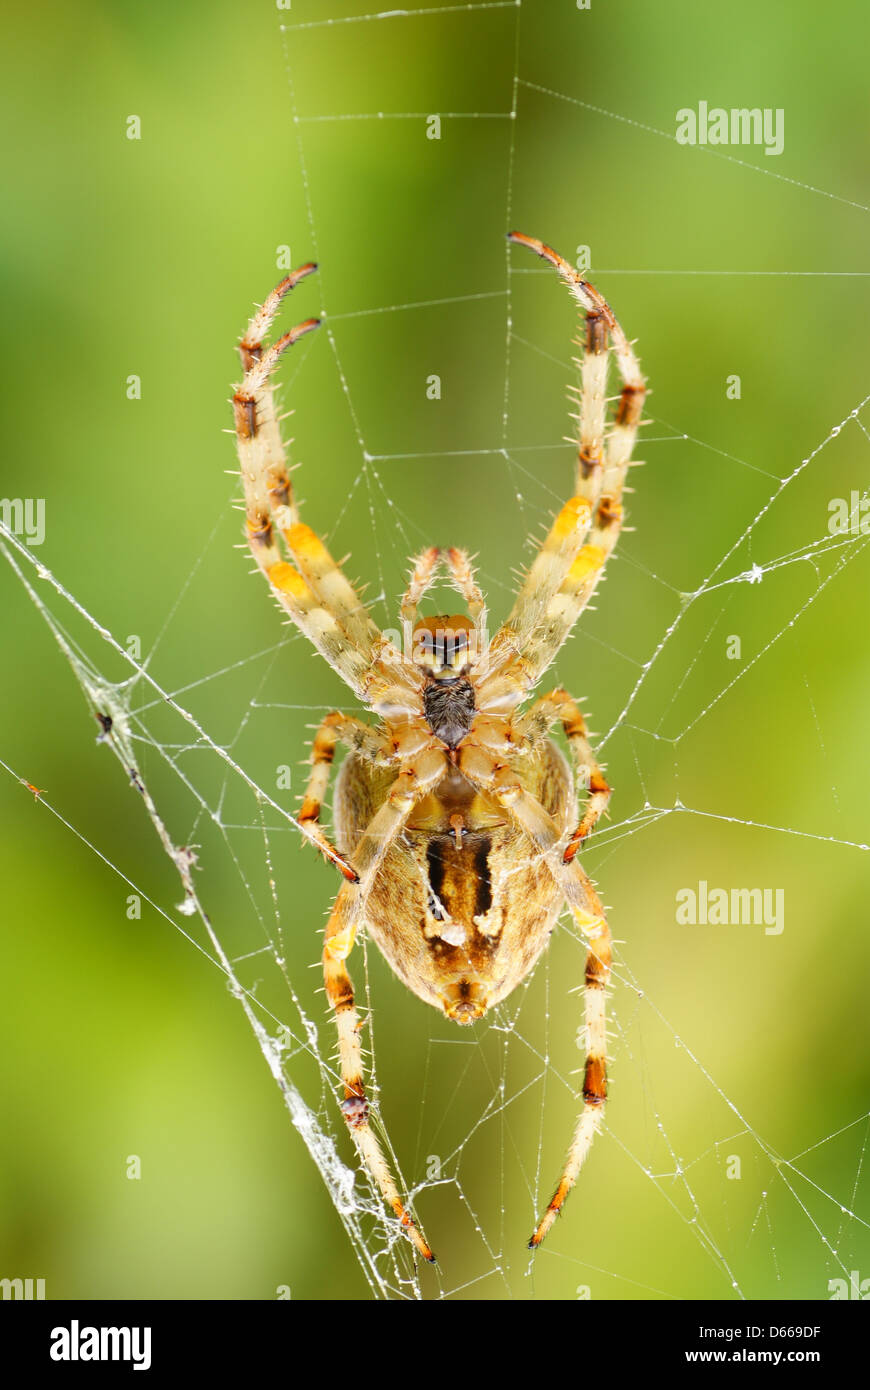 Grosse araignée effrayante sur cobweb à forest Banque D'Images